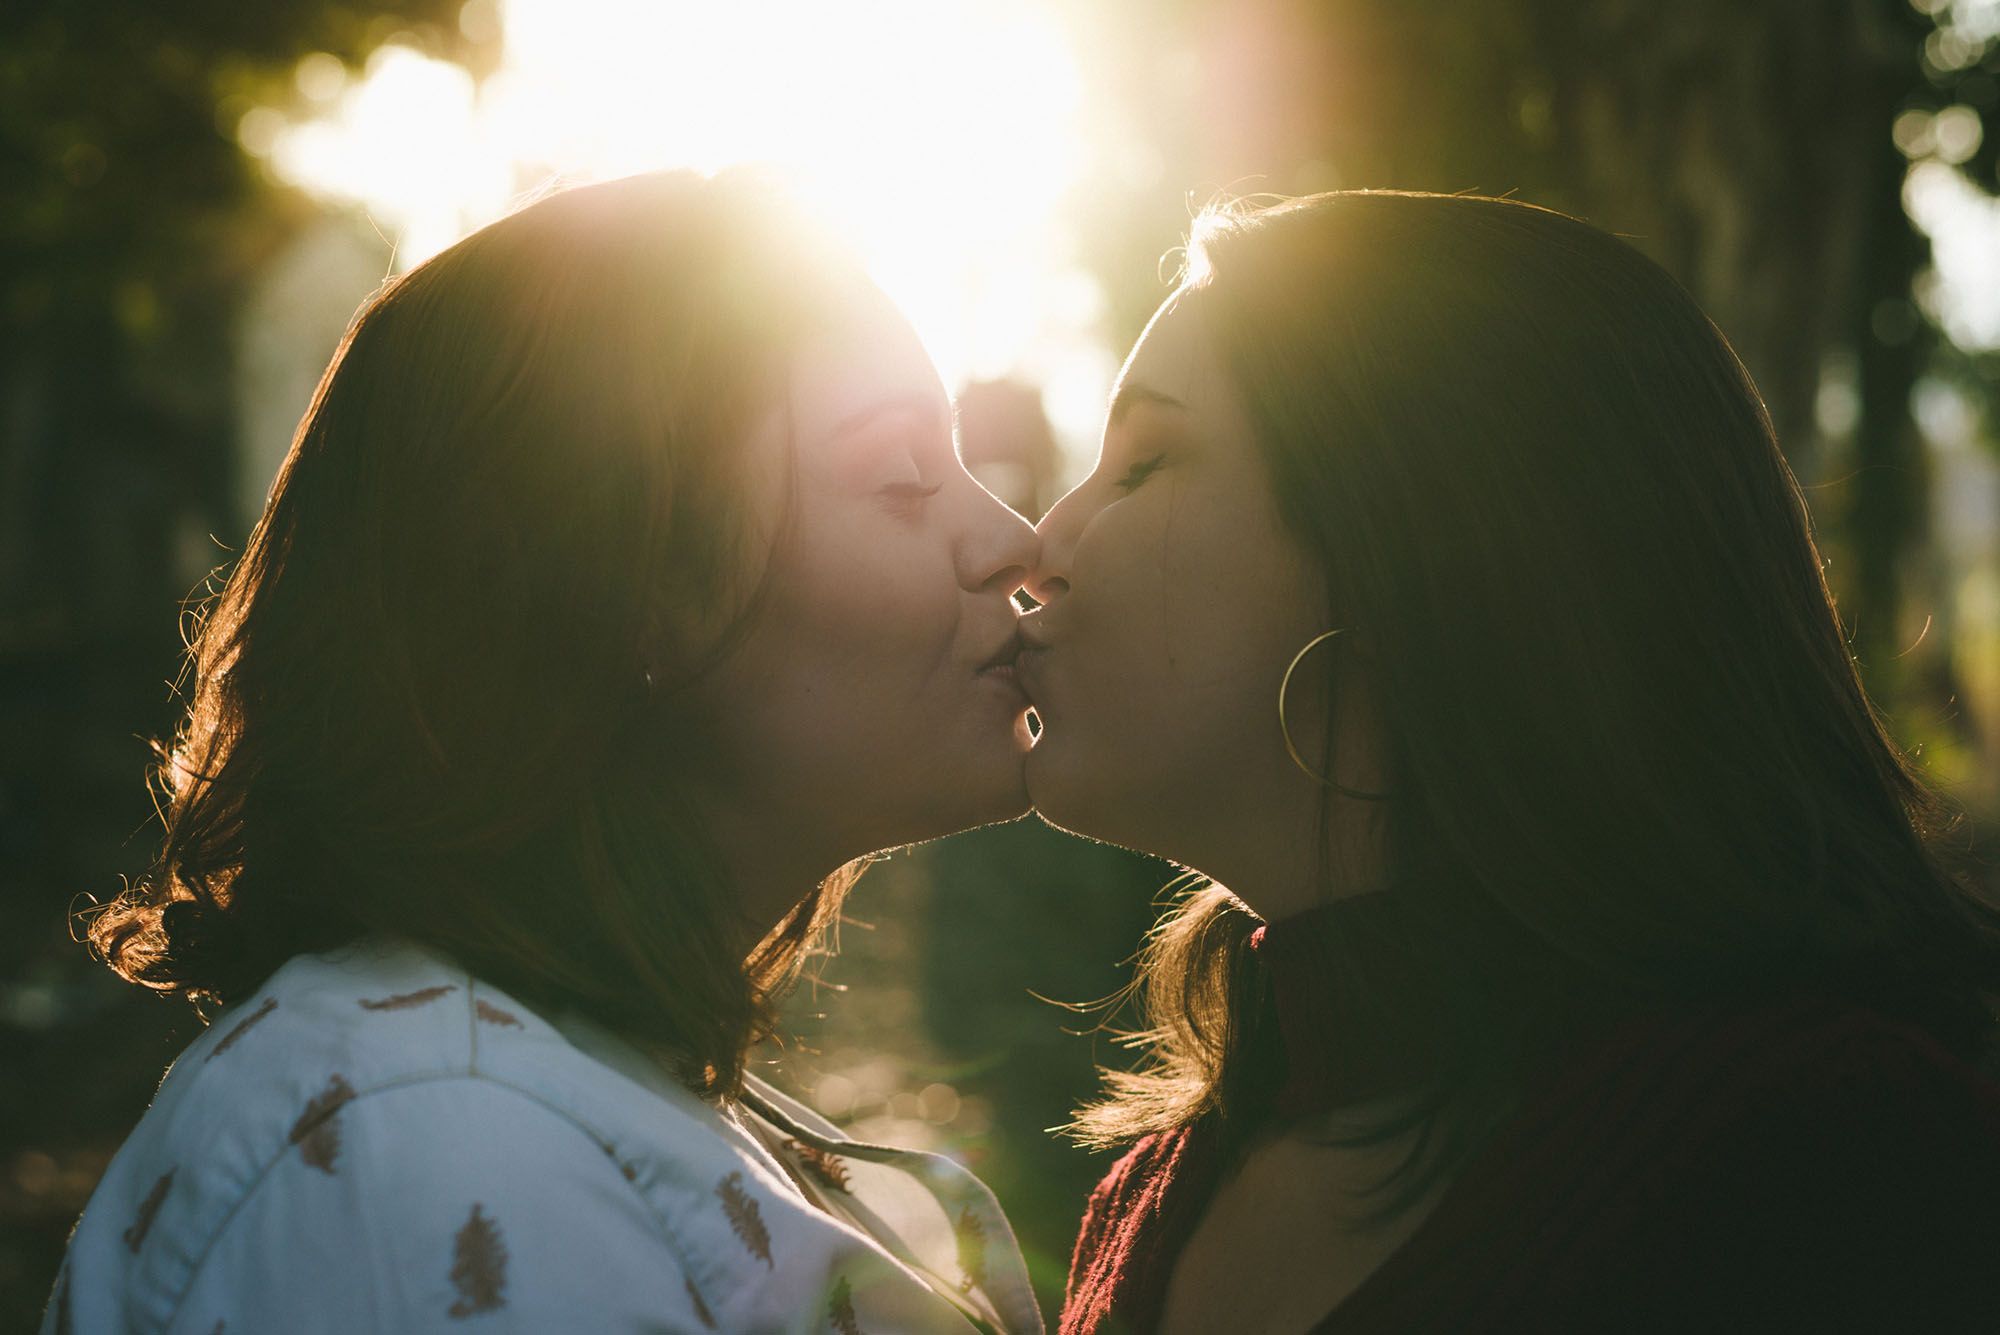 Zwei Frauen küssen sich leidenschaftlich